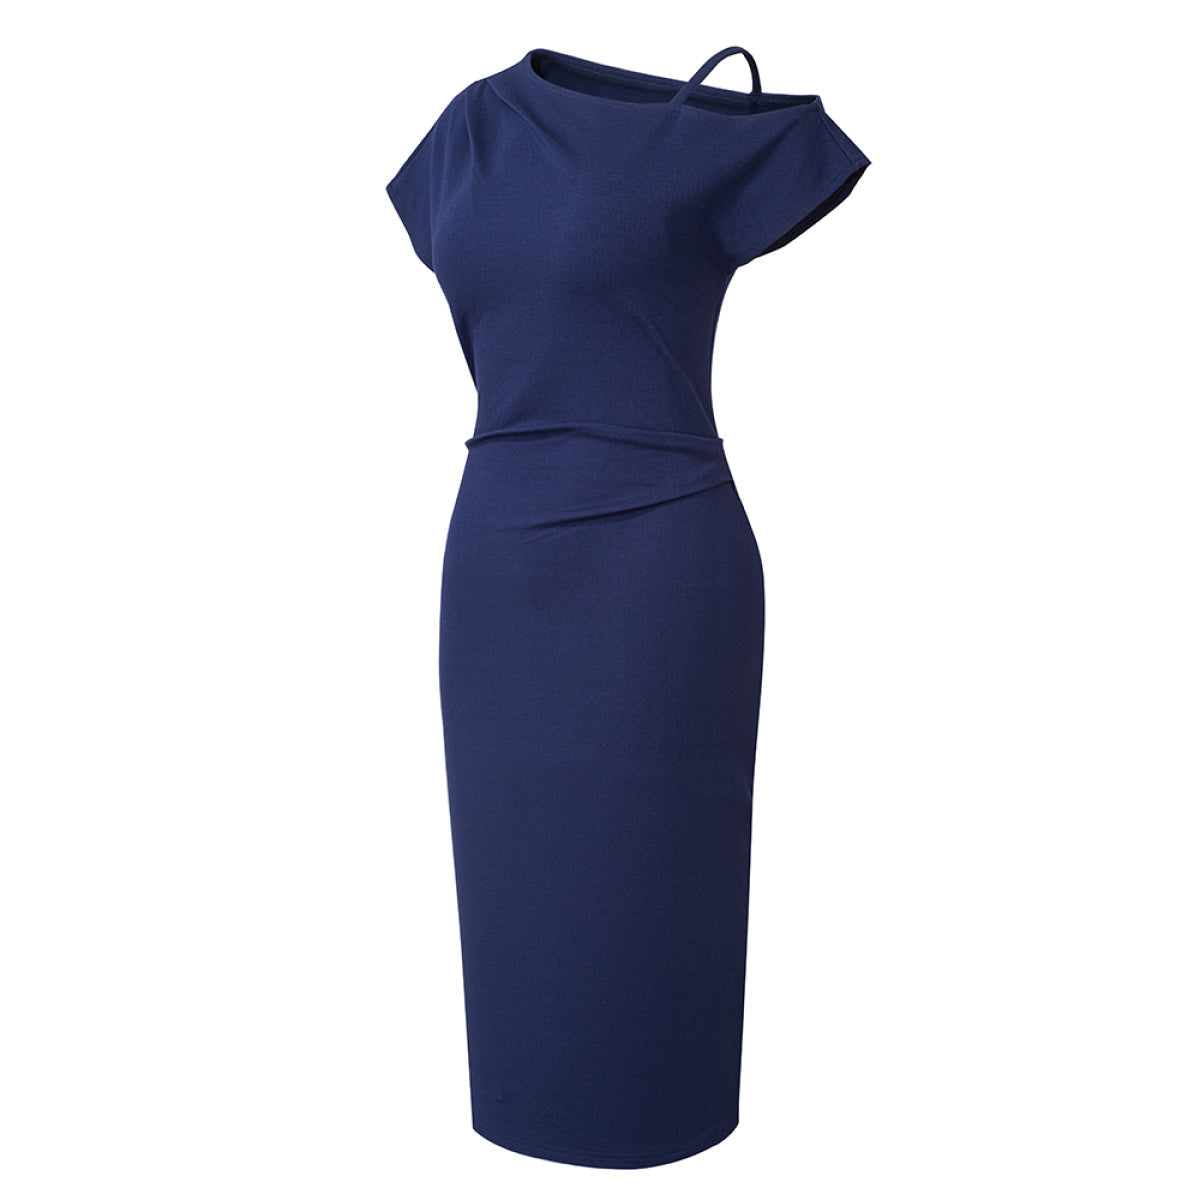 One-Shoulder Short Sleeve Solid Color Mini Dress